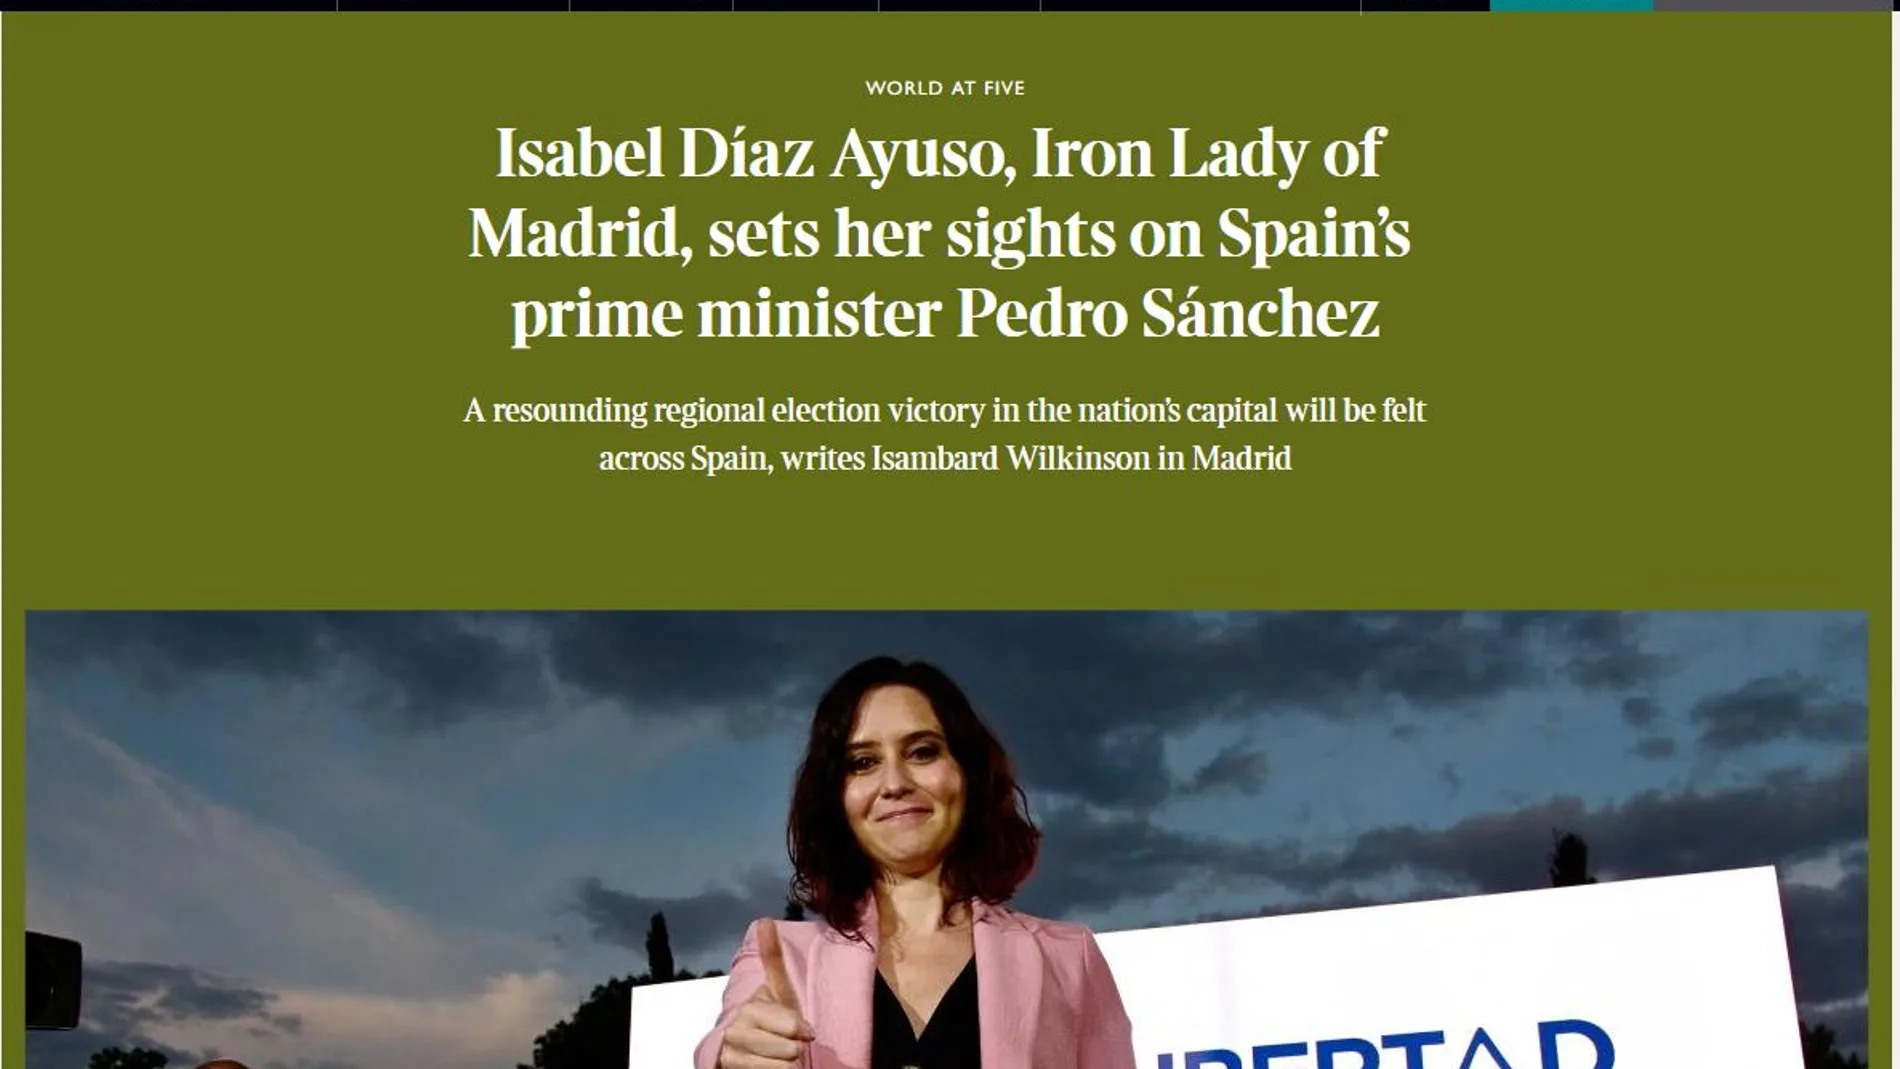 Imagen del artículo que le dedica The Times a Isabel Díaz Ayuso